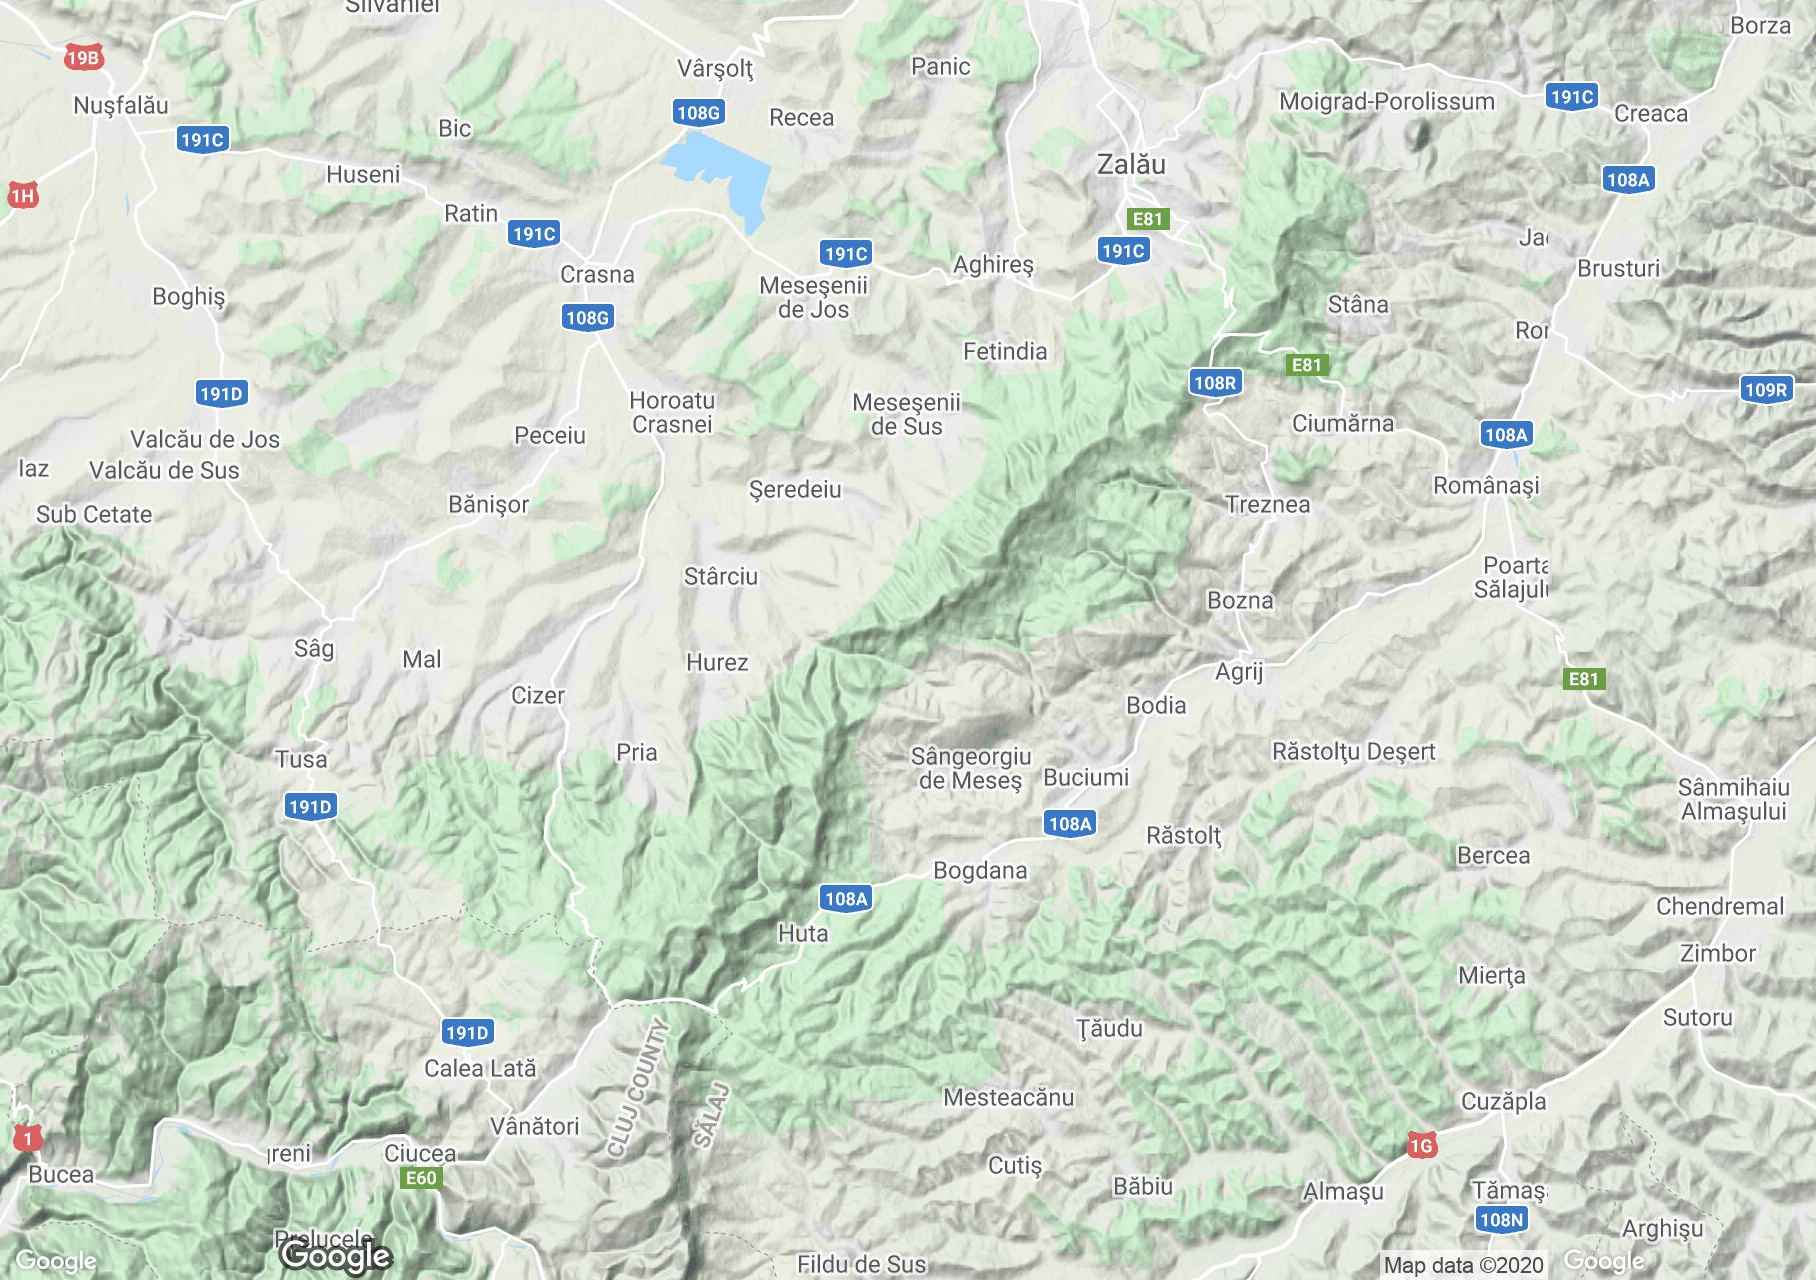 Erdélyi Szigethegység: Meszes hegység interaktív turista térképe.